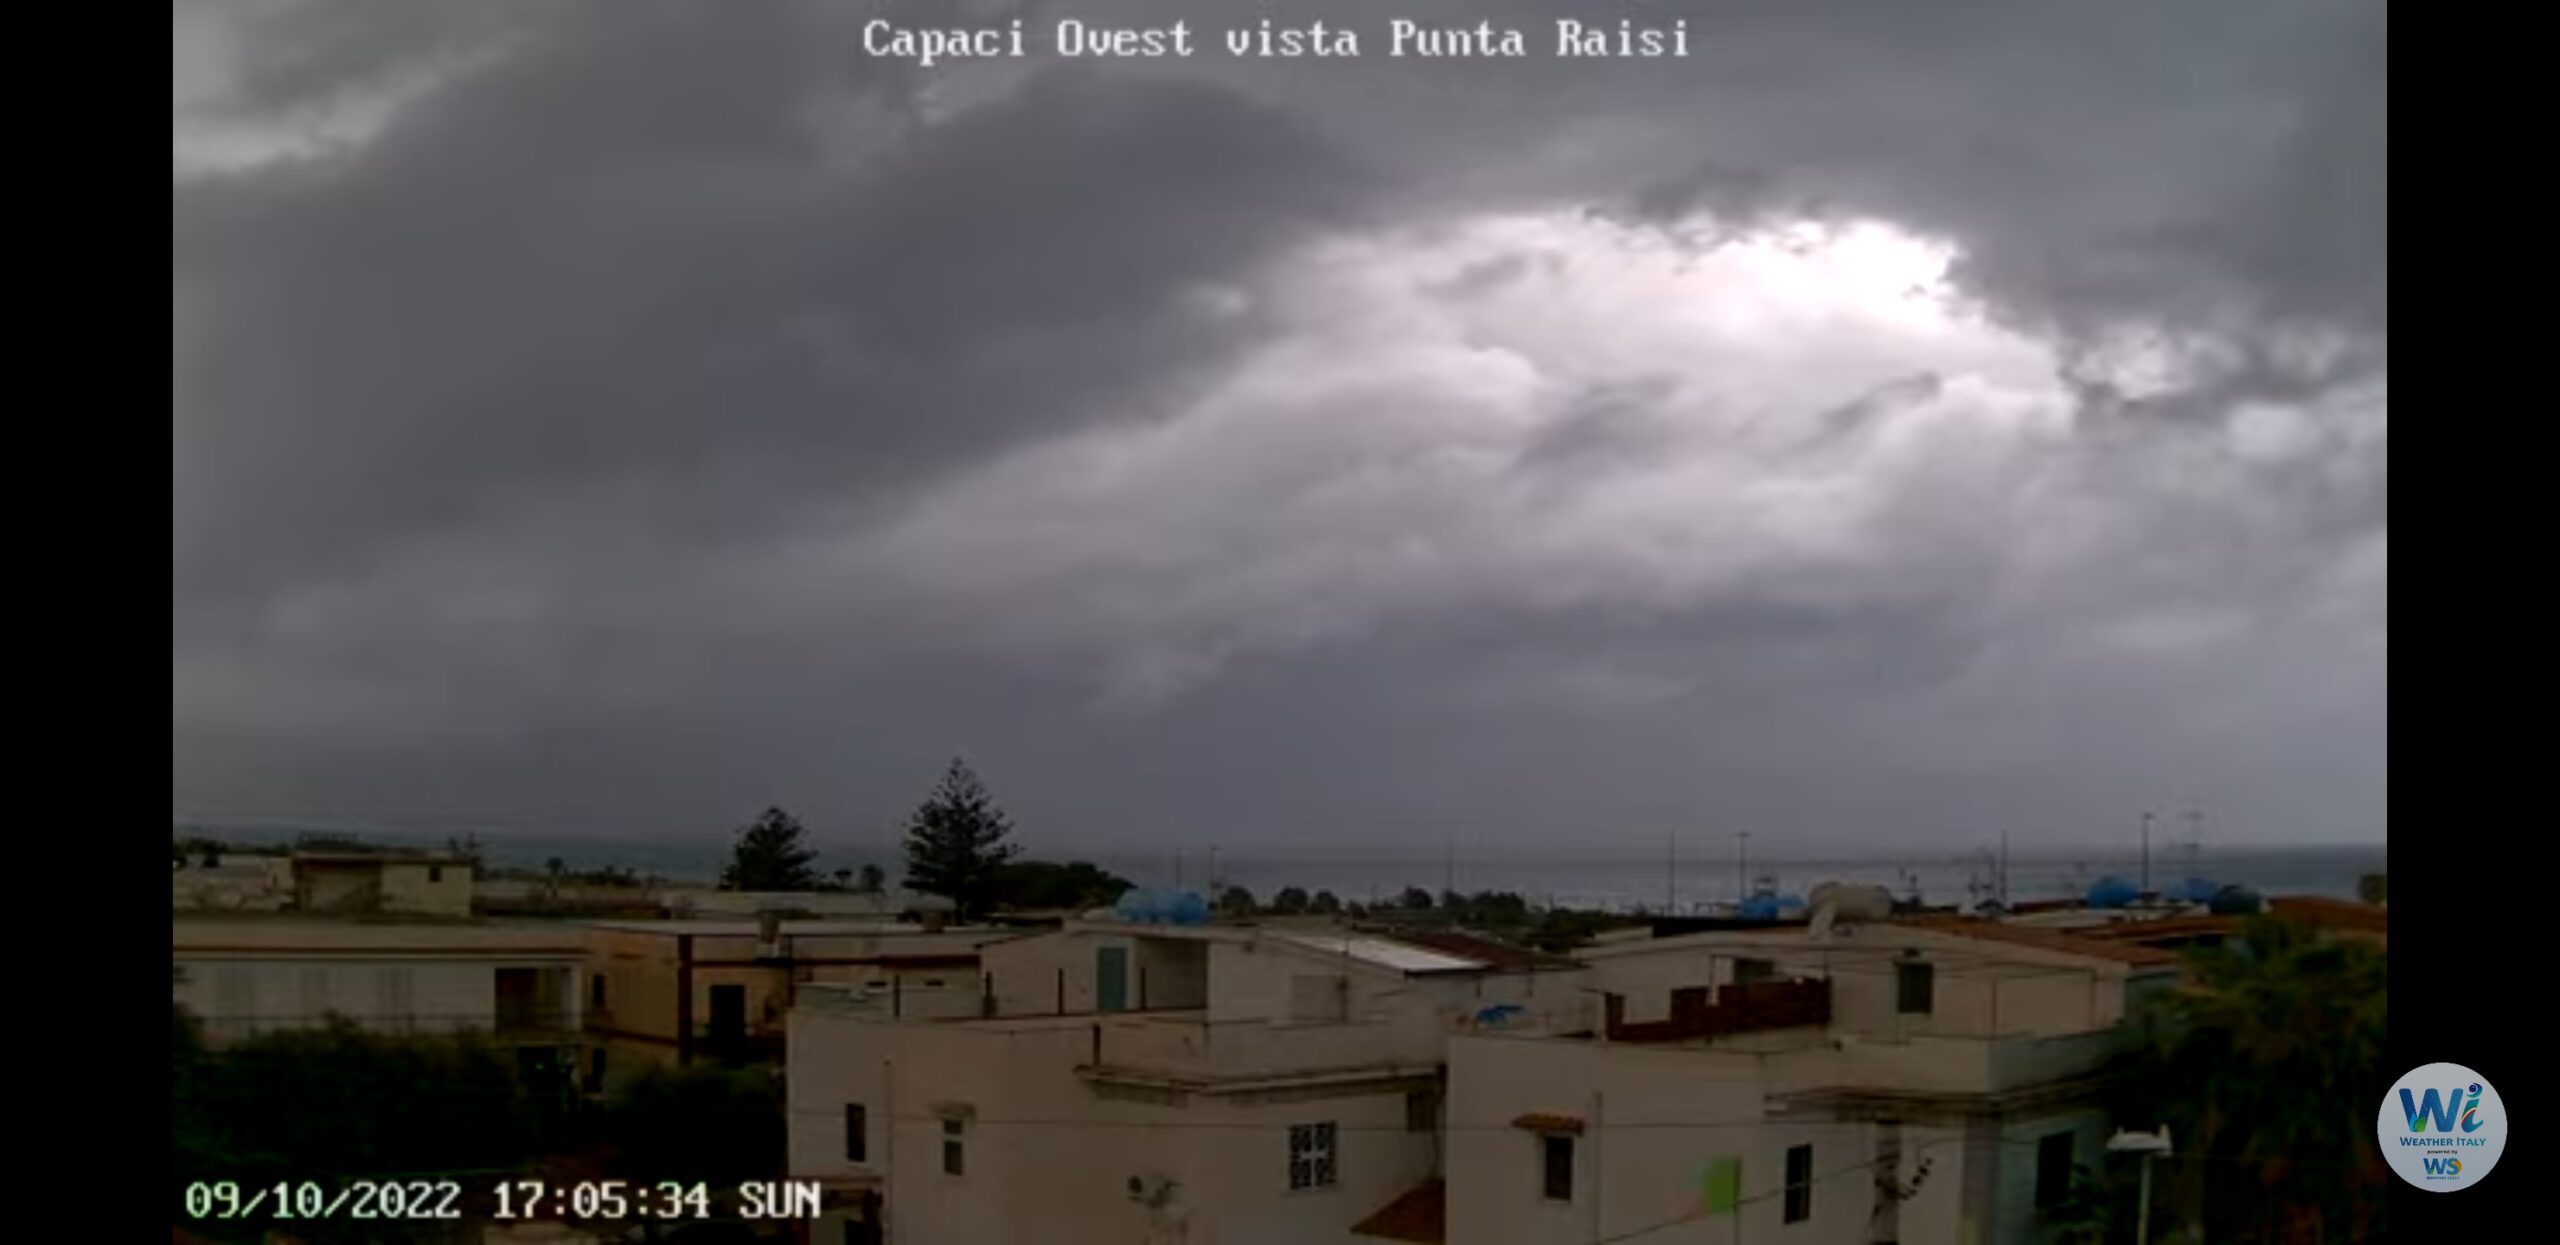 Meteo Sicilia: temporali arrivati sull'alto palermitano tirrenico! Piogge e forti venti in atto. La situazione live.